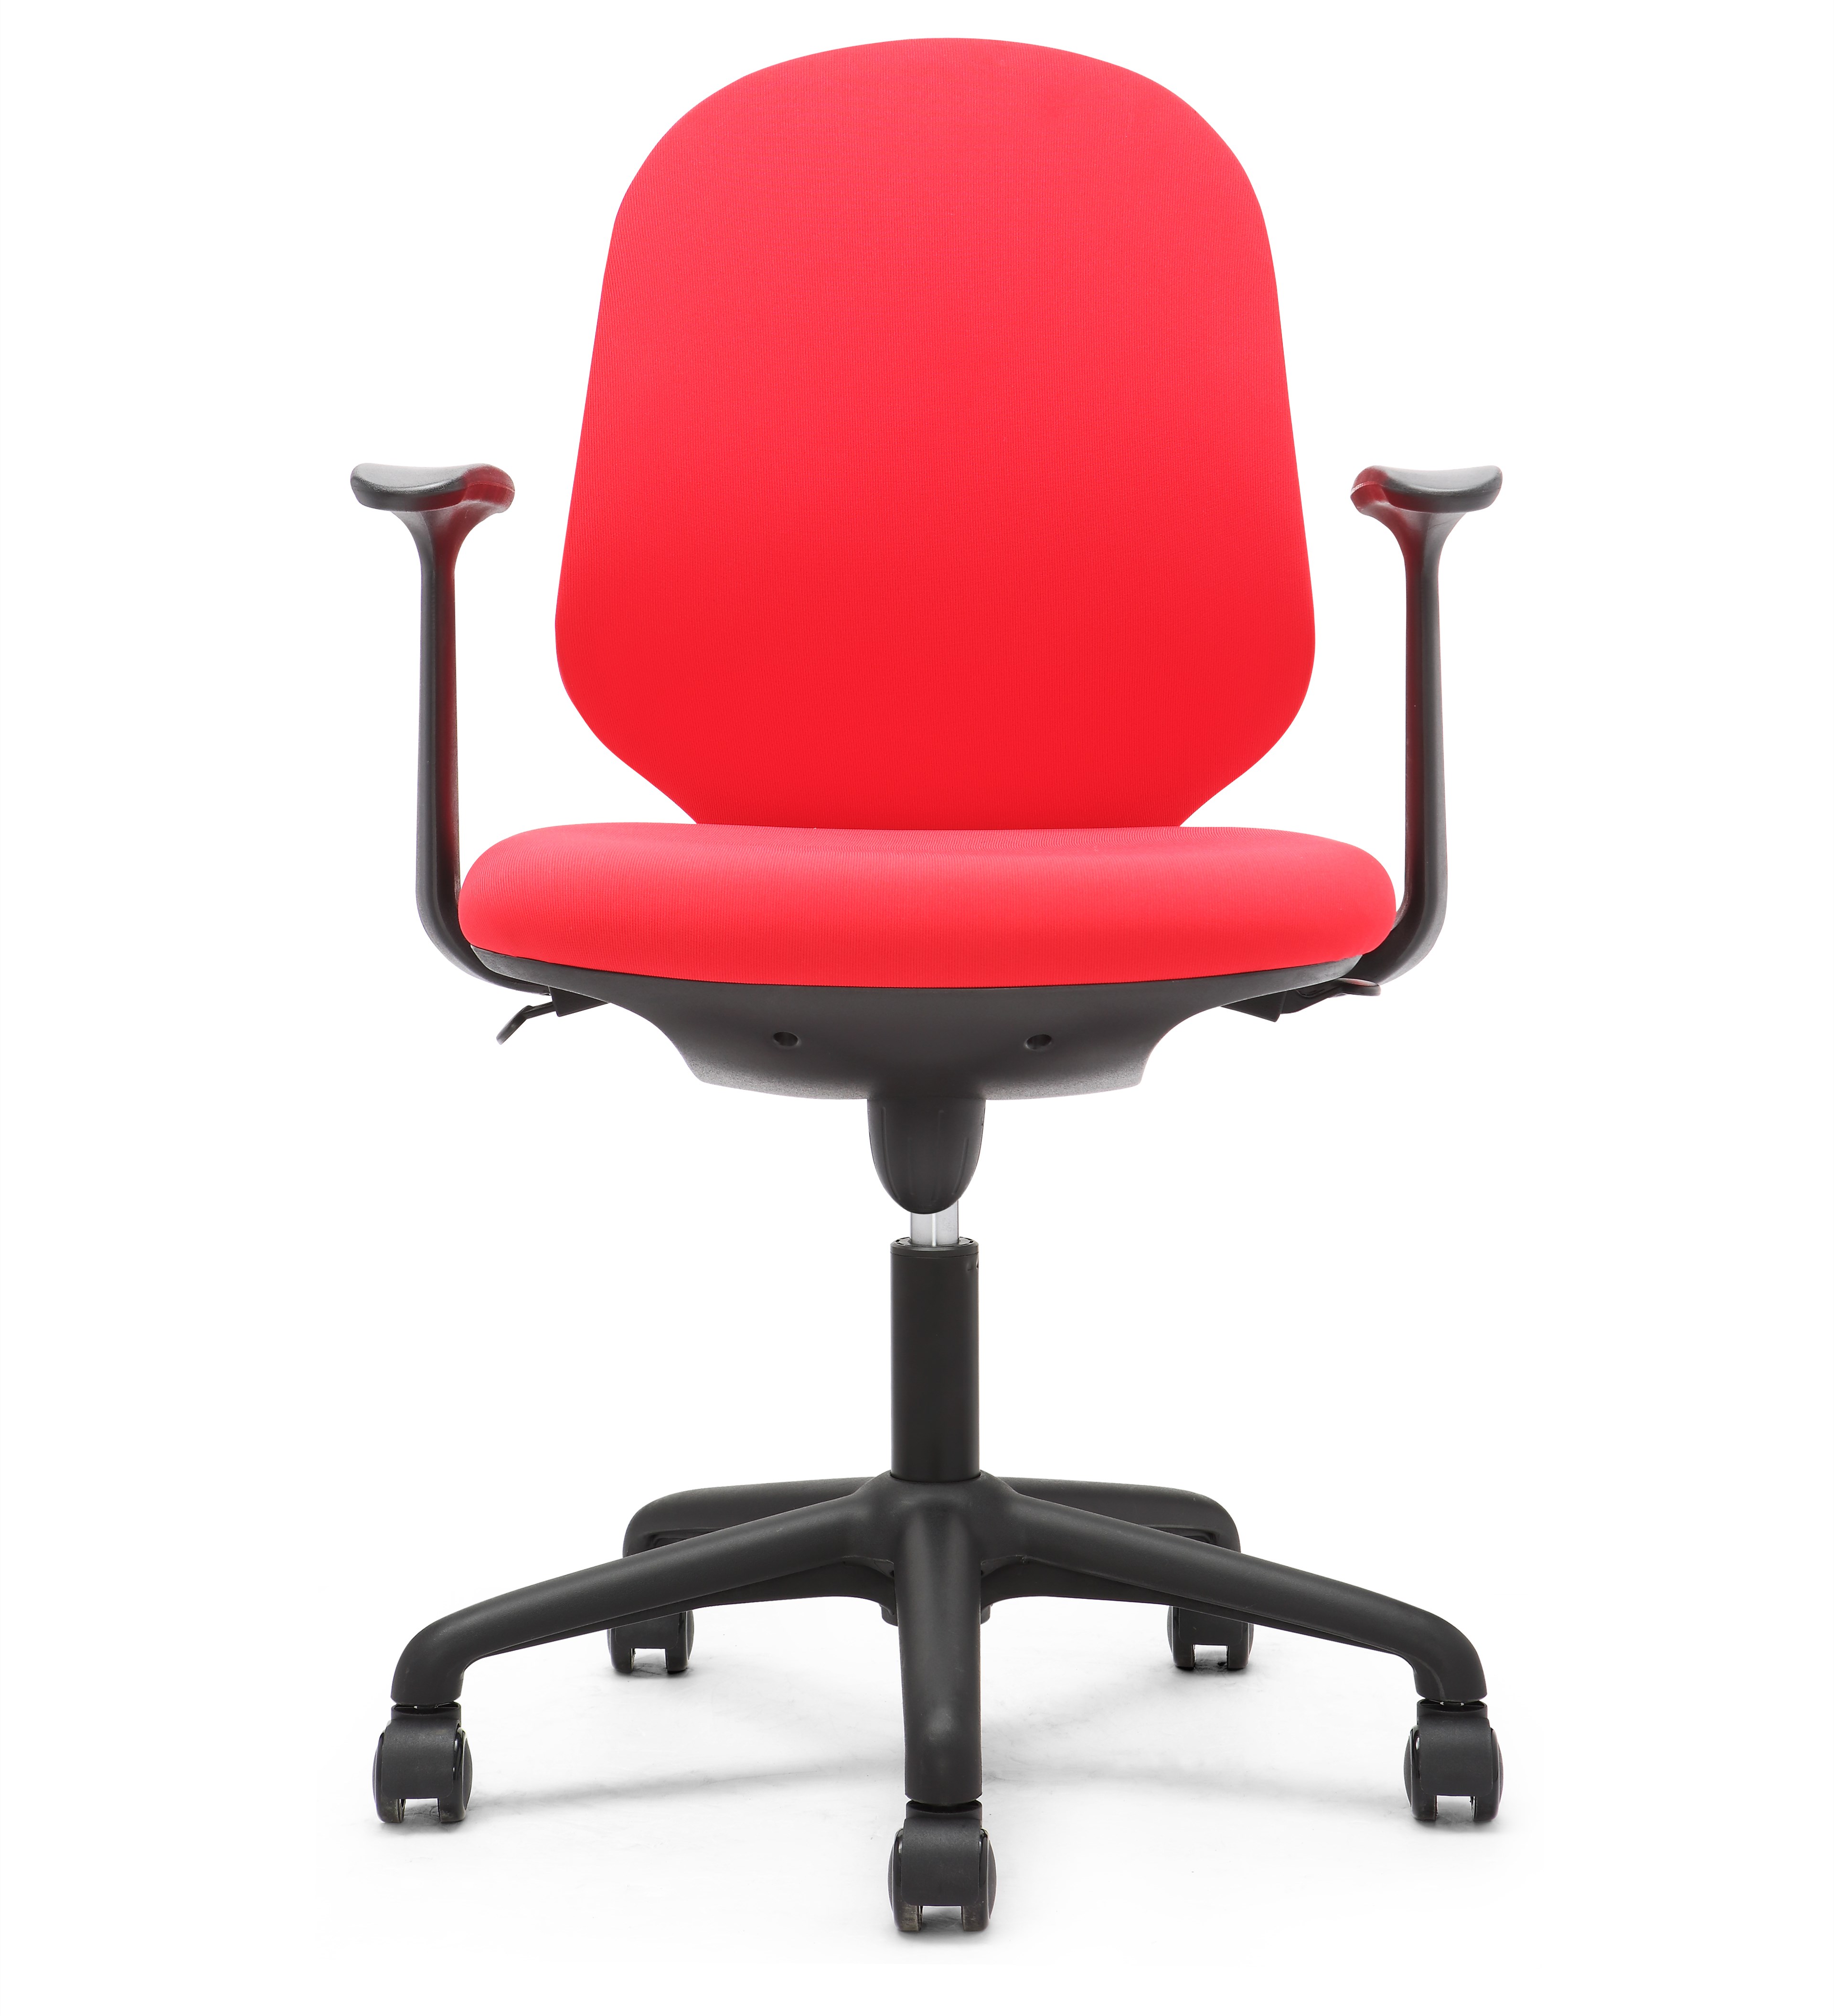 简约现代办公椅电脑椅 PP603GATL-BK 黑胶